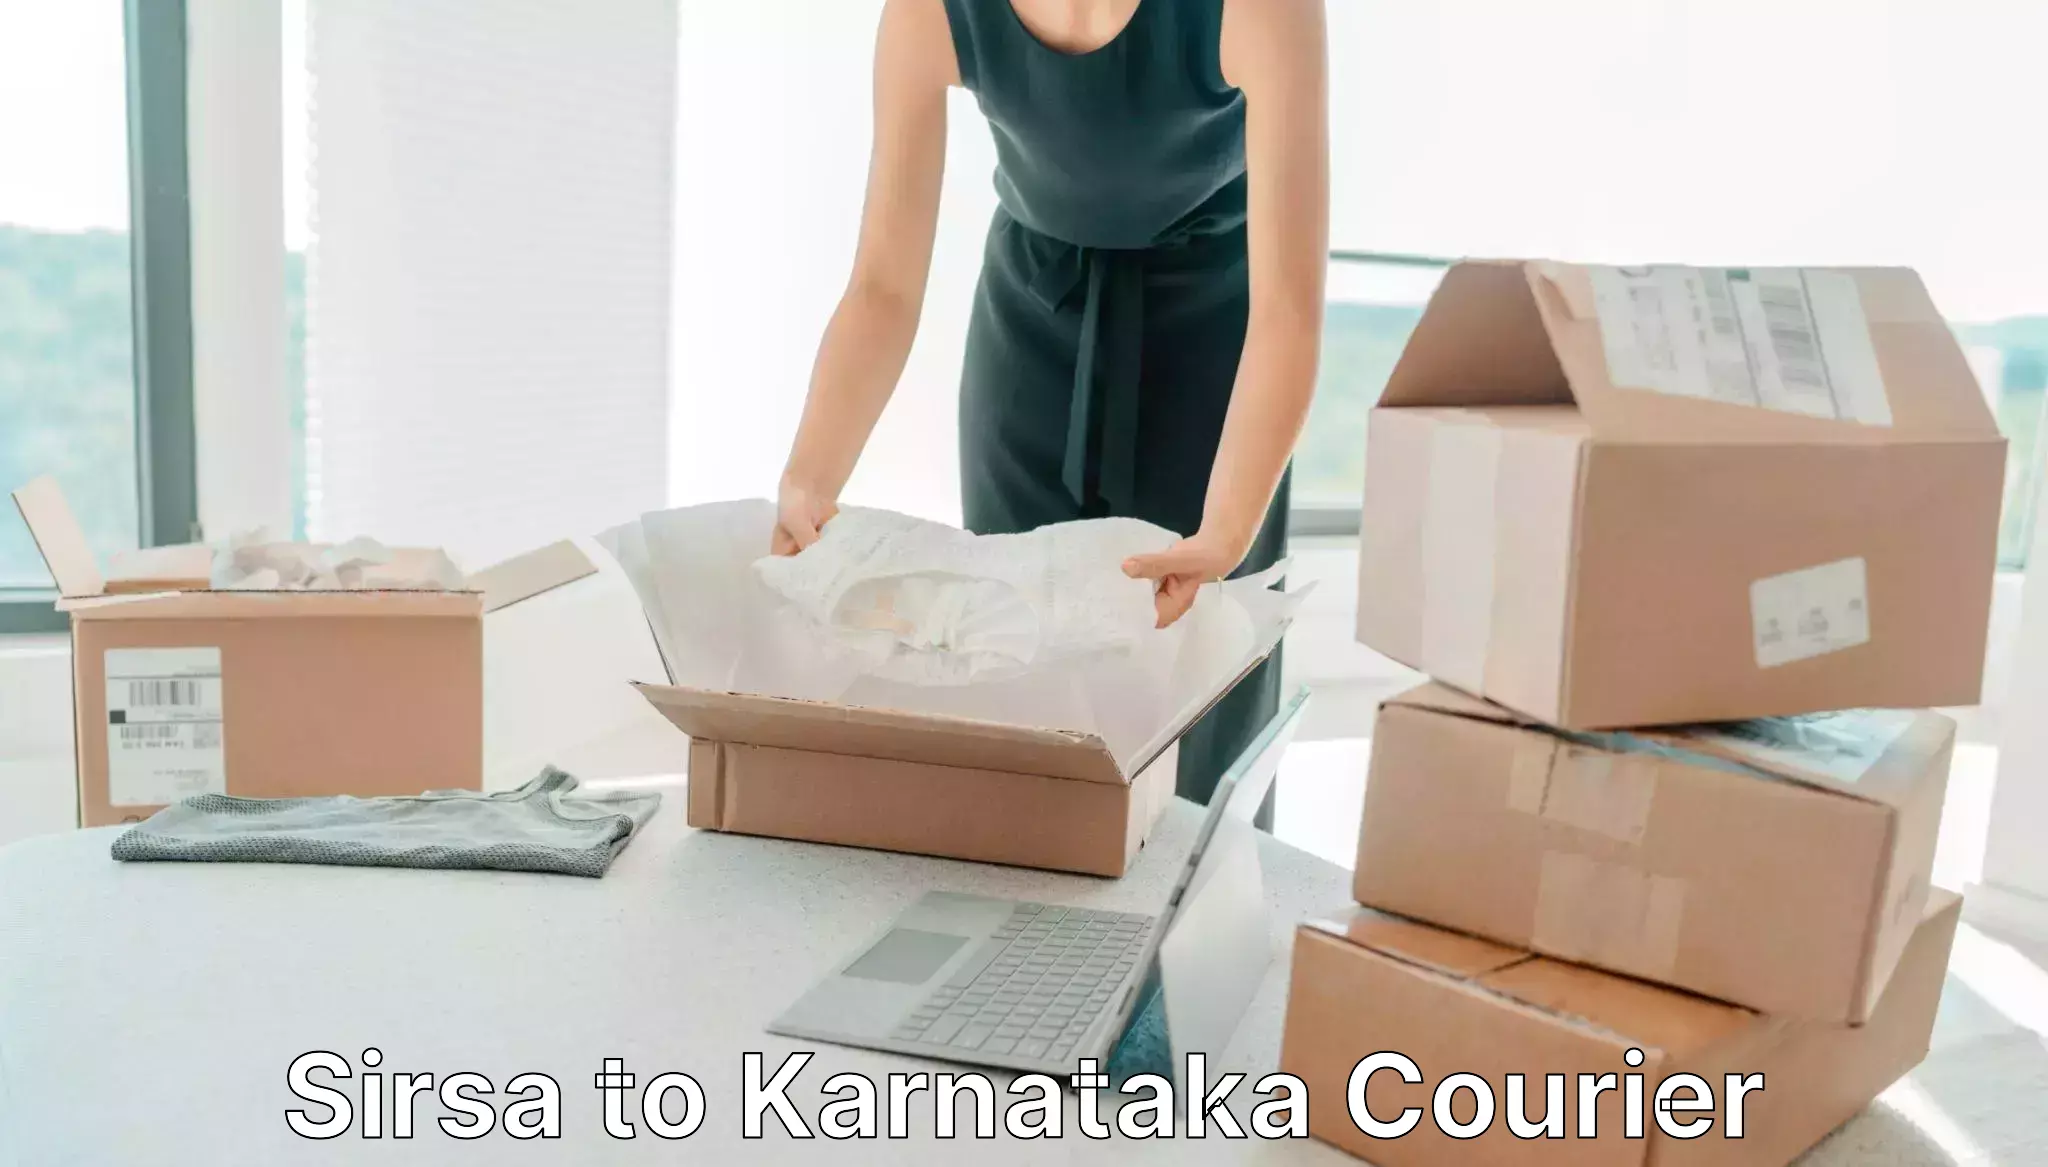 International courier rates Sirsa to Yenepoya Mangalore